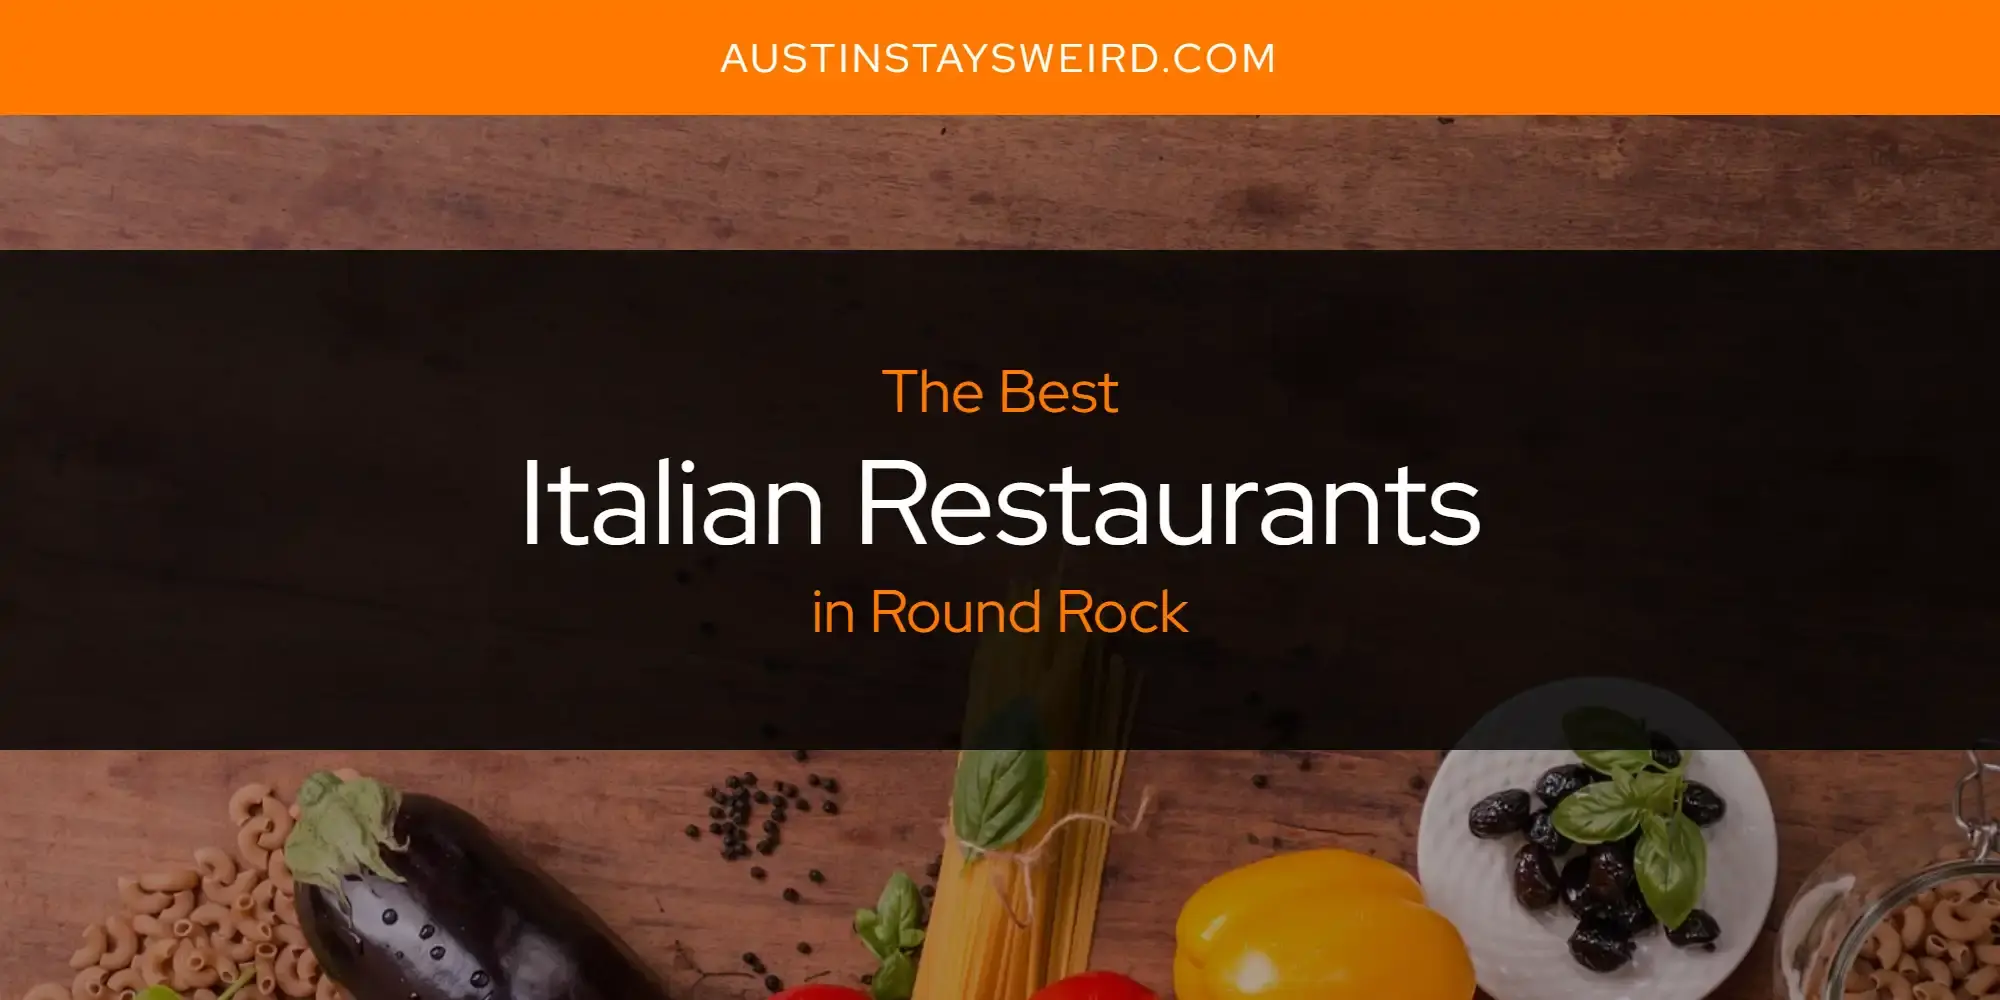 Best Italian Restaurants in Round Rock? Here's the Top 8